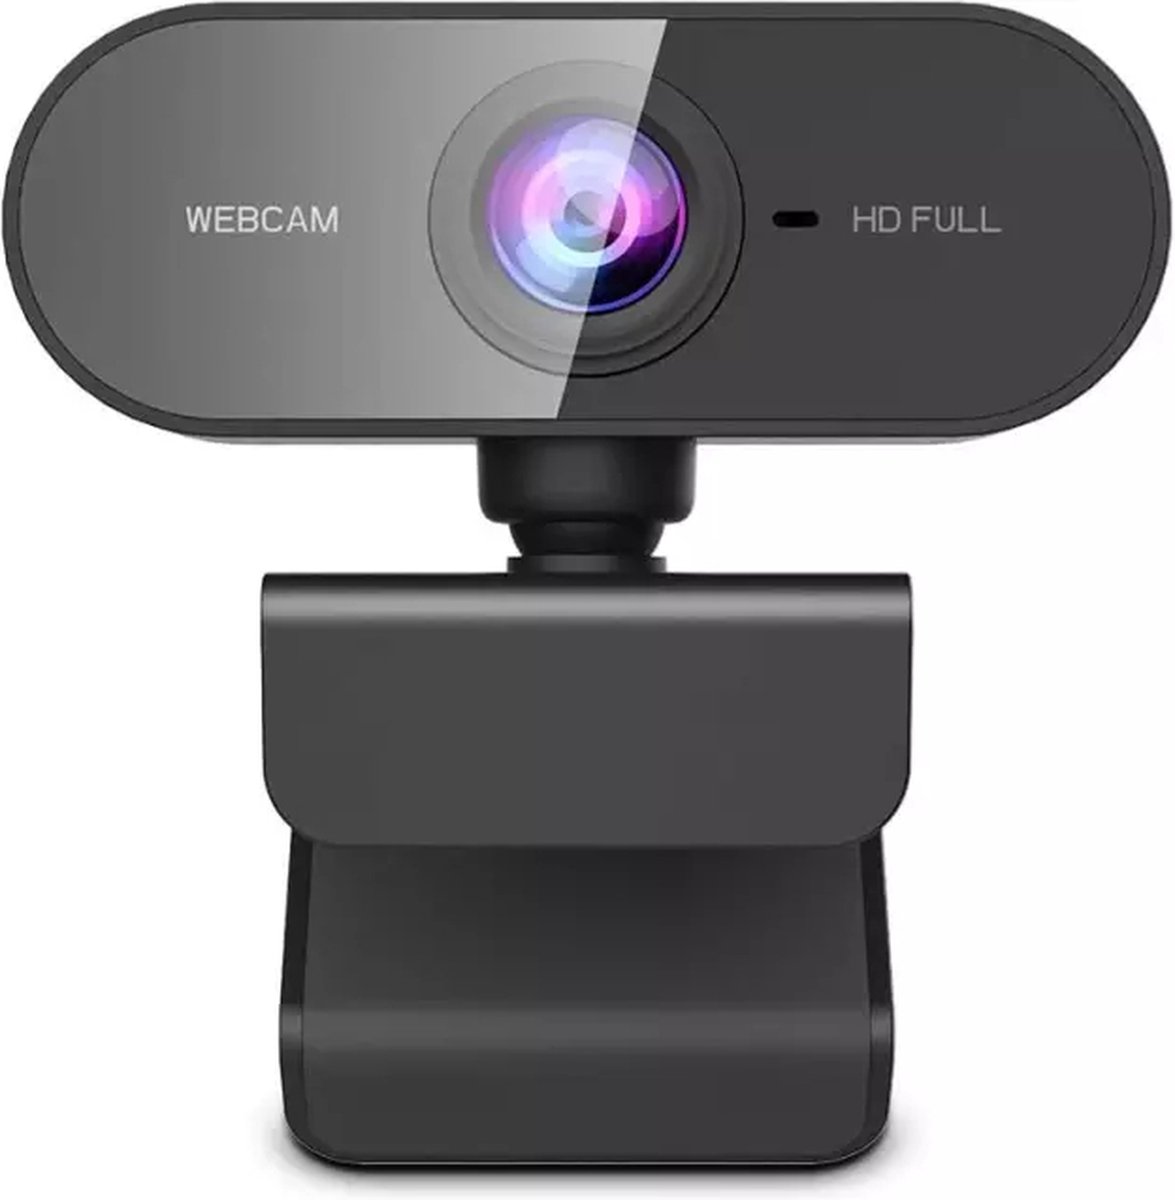 Missan: Bentoben Webcam 1080p HD Camera Usb / Professioneel AUTOFOCUS Webcam / StreamCam / Webcam voor pc met USB / Camera voor vergadering / Windows en Apple Mac / Meeting / Skype / Facetime / Zoom / Twitch